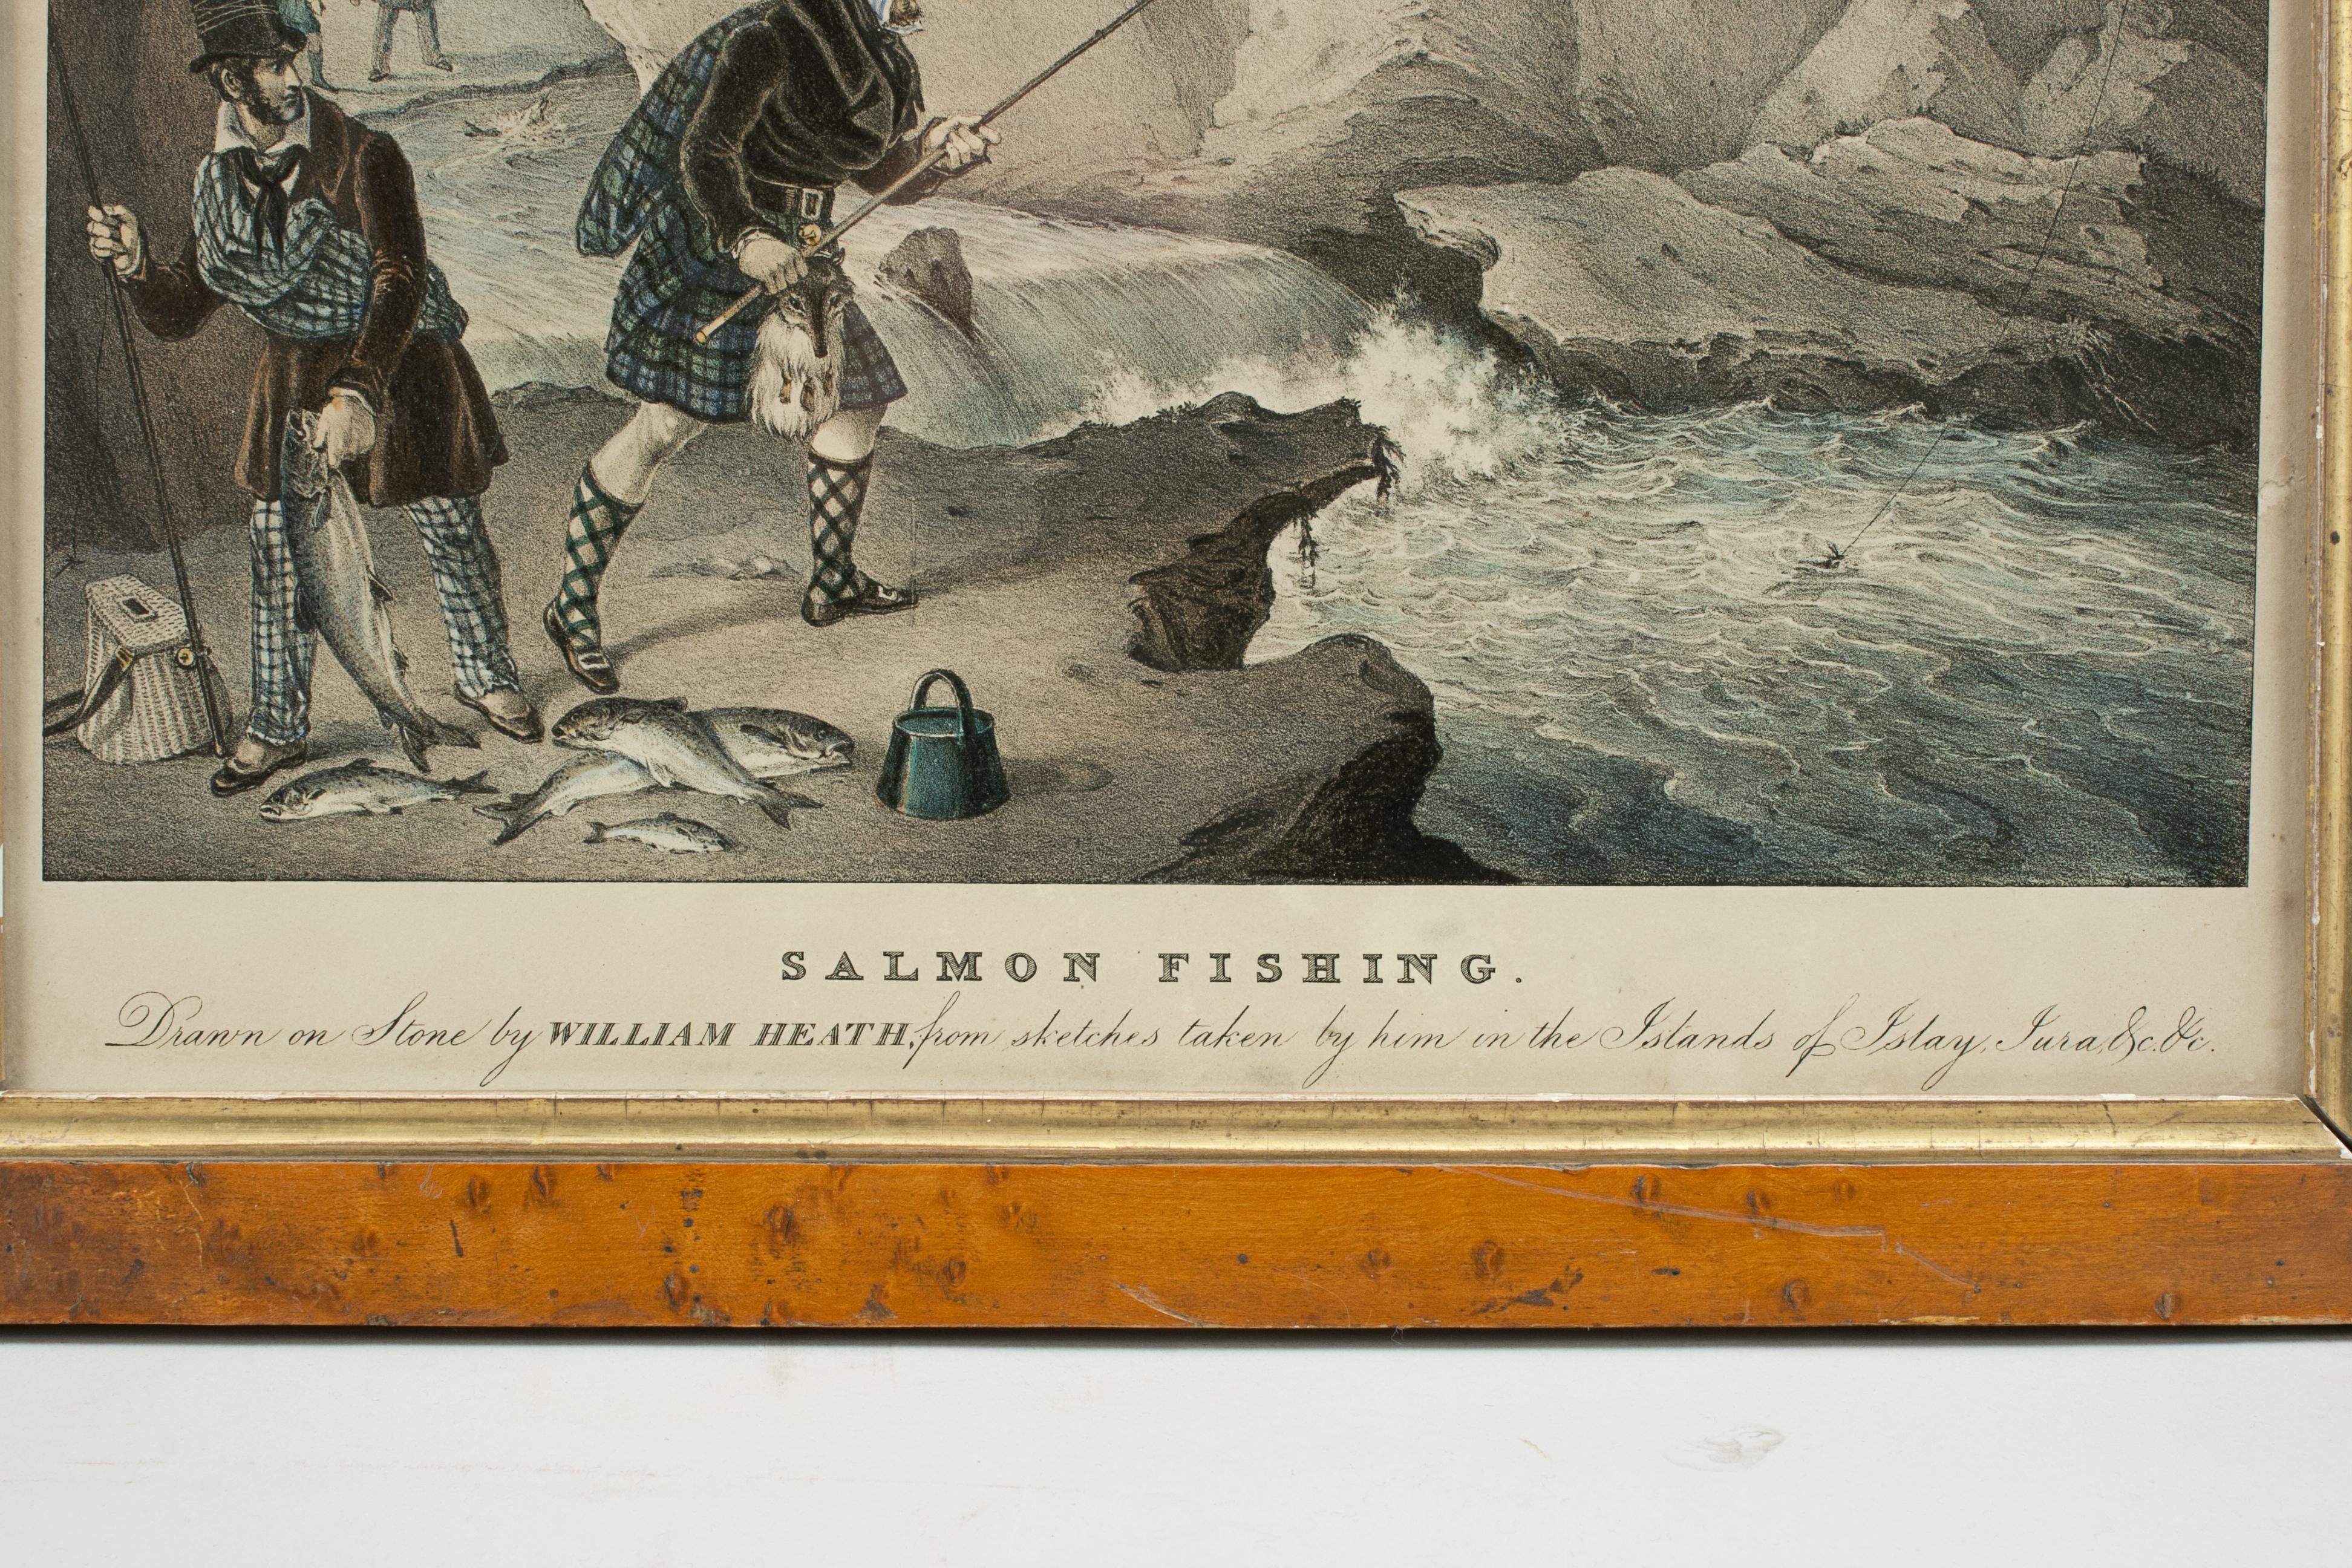 Milieu du XIXe siècle Photographie de pêche, Sport dans les îles écossaises, pêche au saumon, William Heath en vente